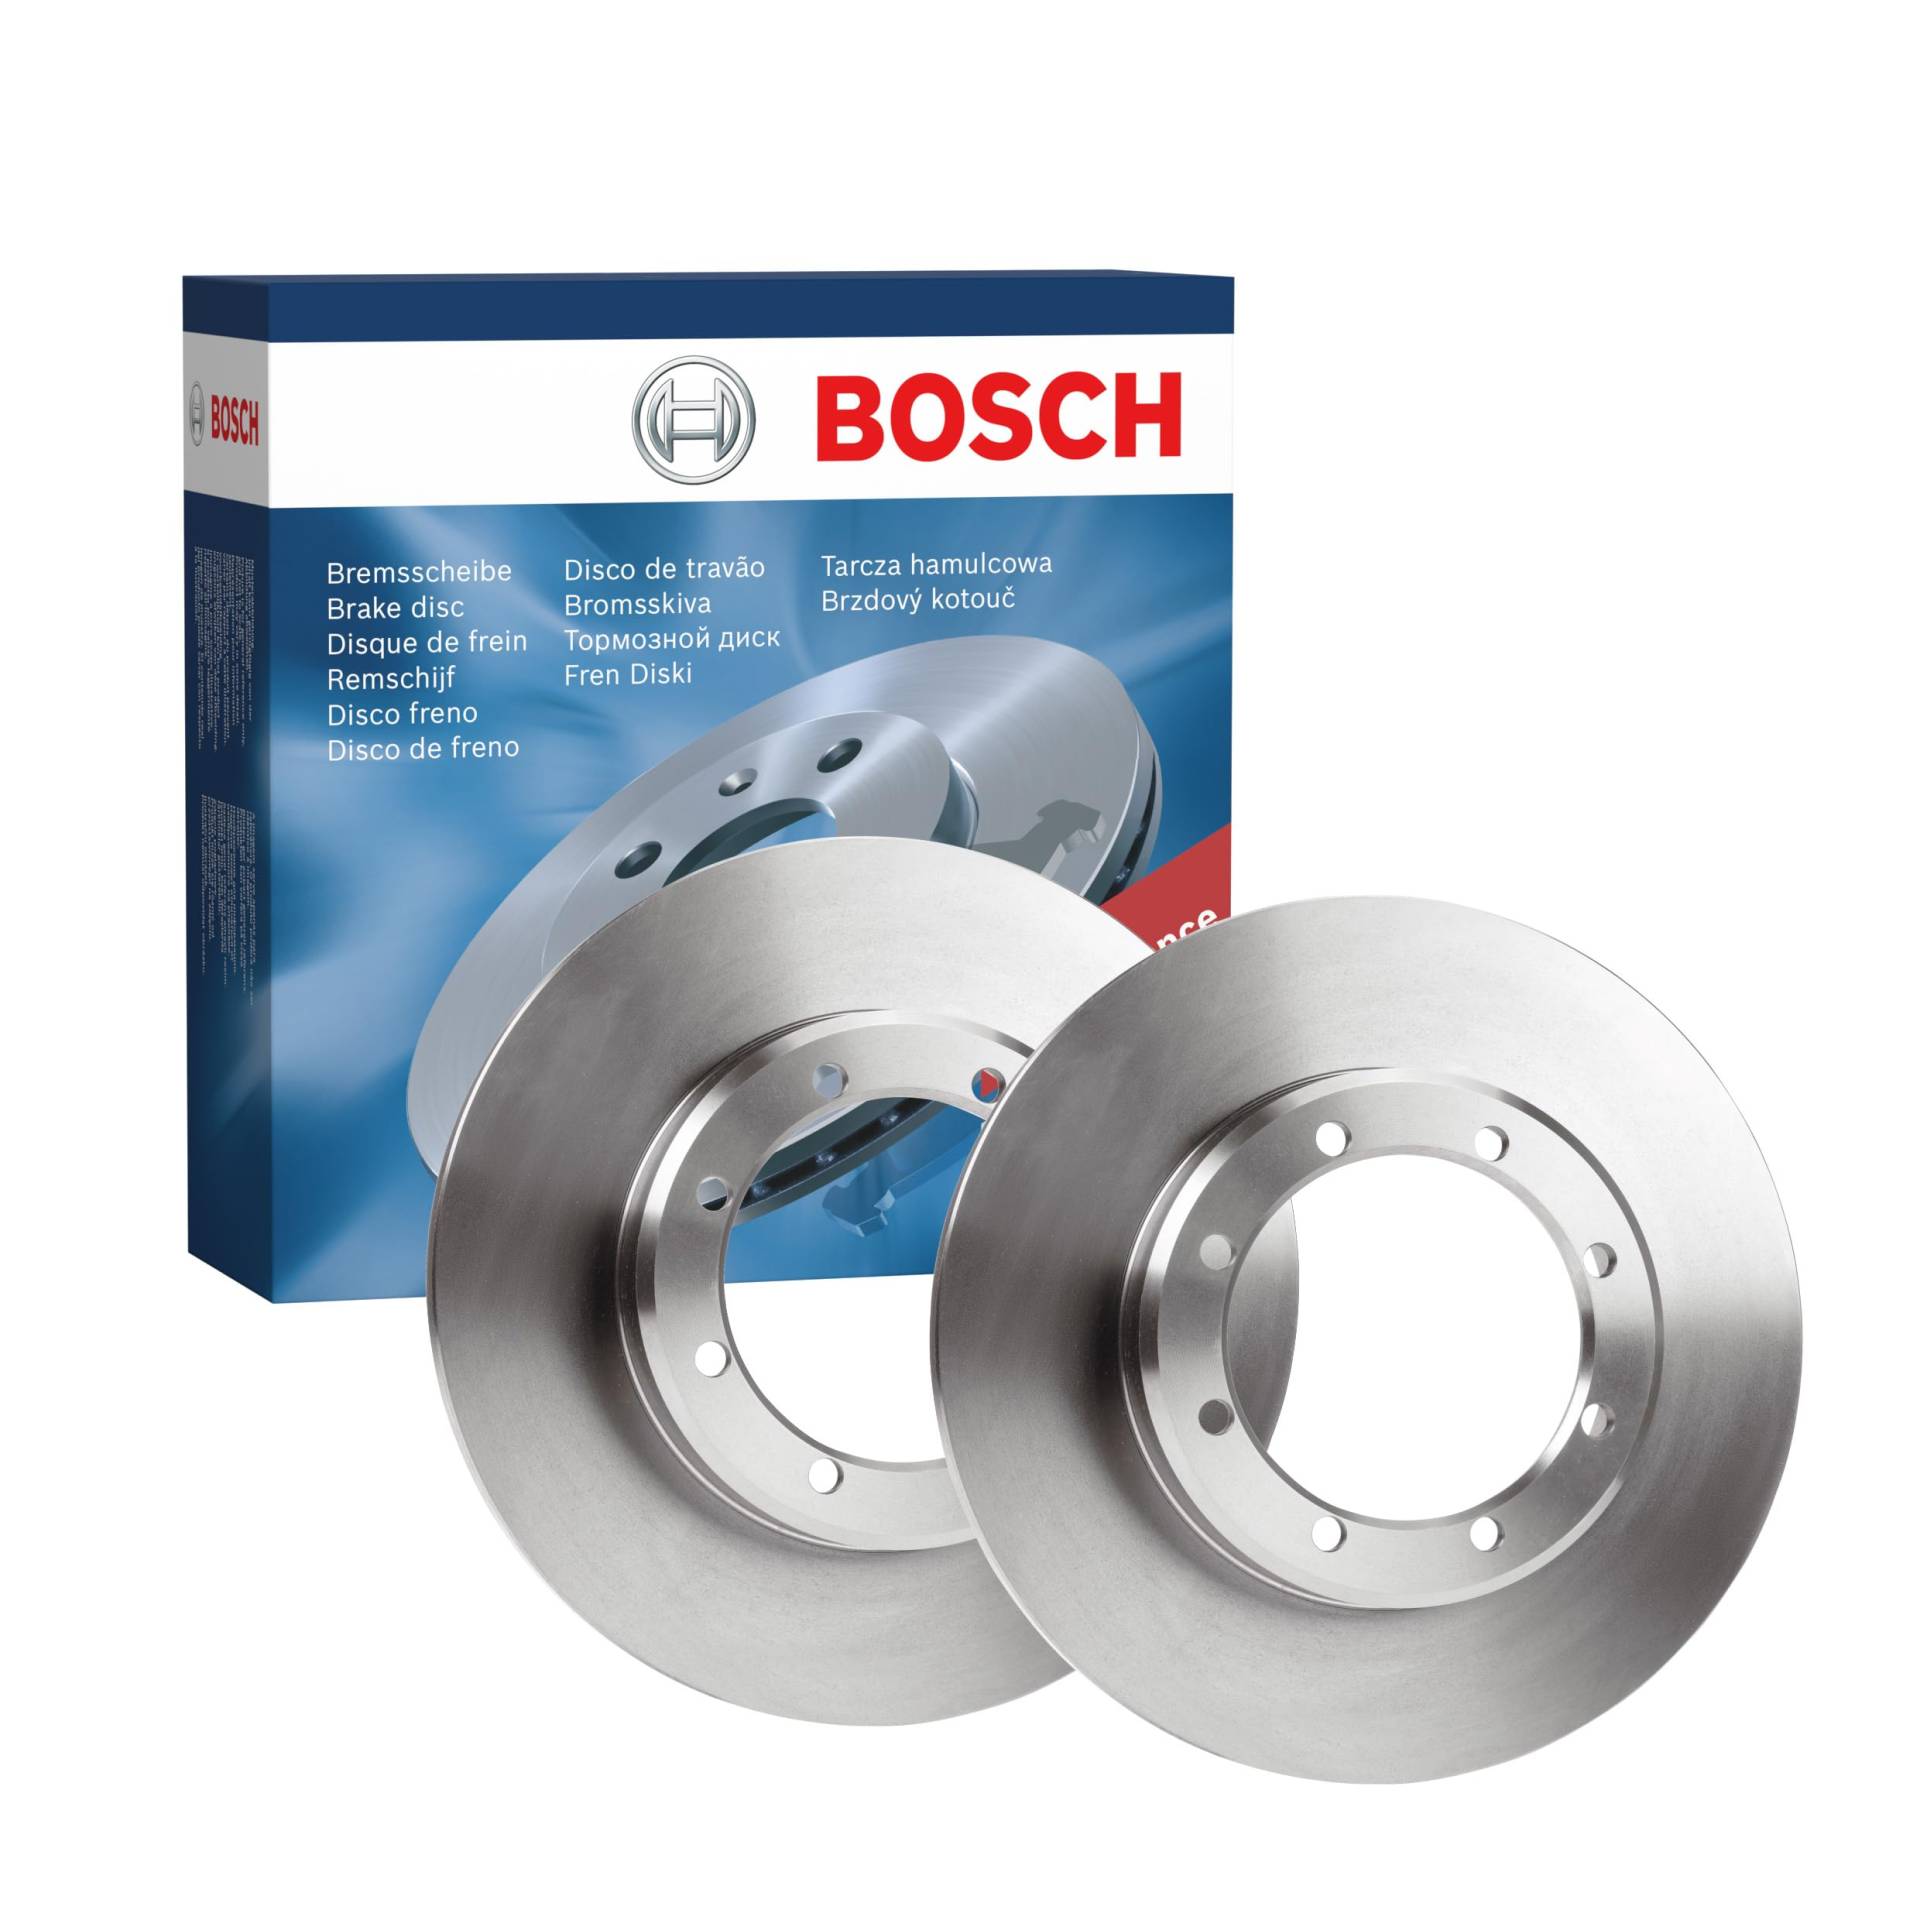 Bosch BD2153 Bremsscheiben - ECE-R90 Zertifizierung - zwei Bremsscheiben pro Set von Bosch Automotive